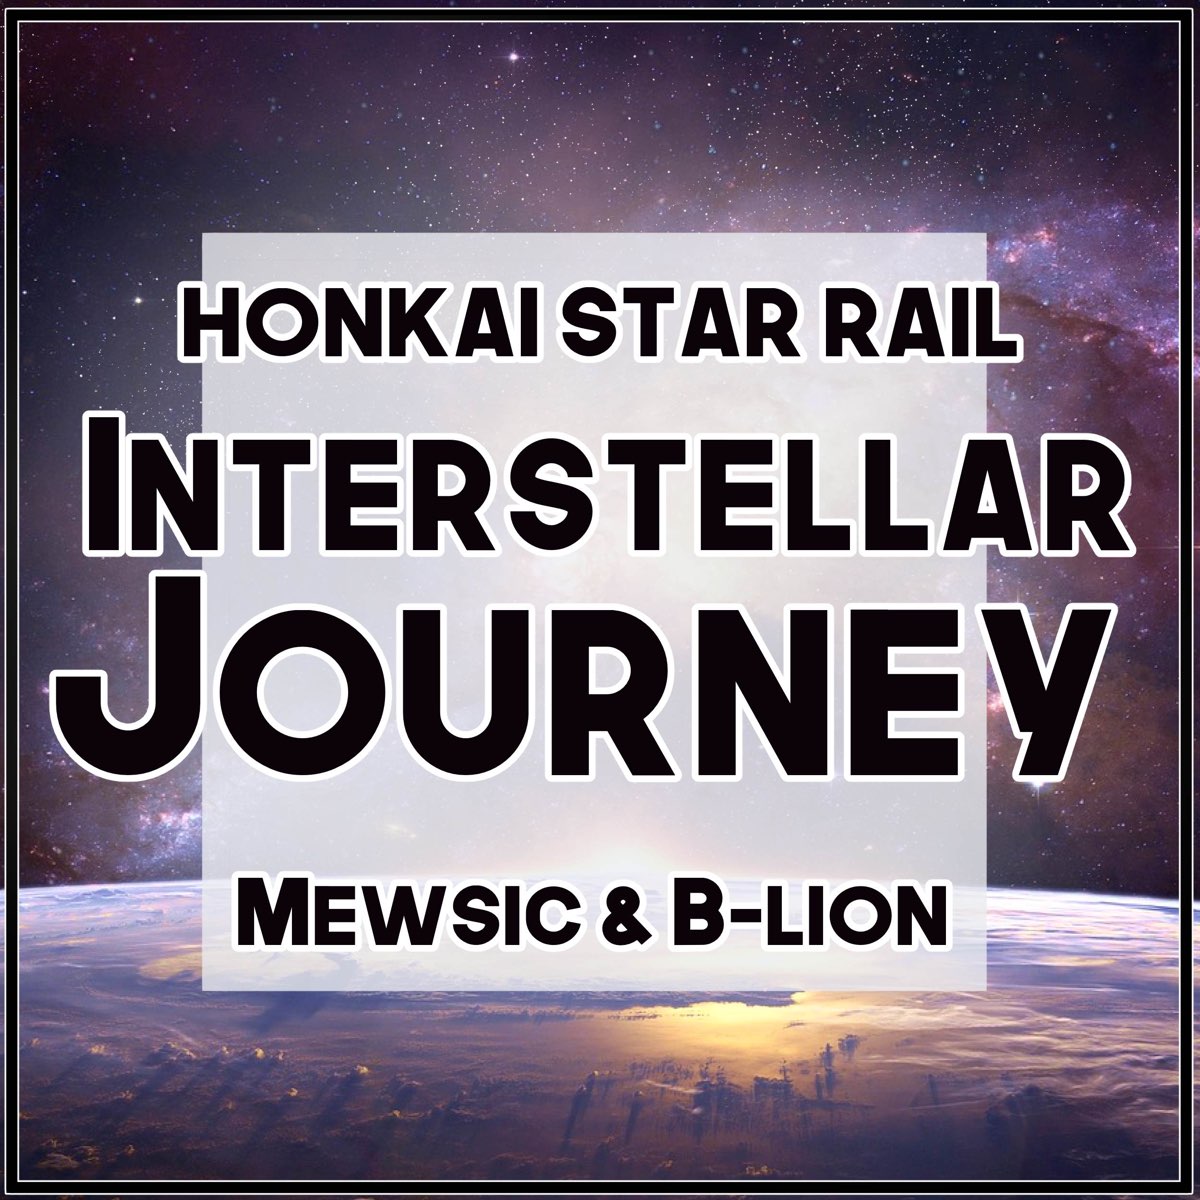 interstellar journey mp3